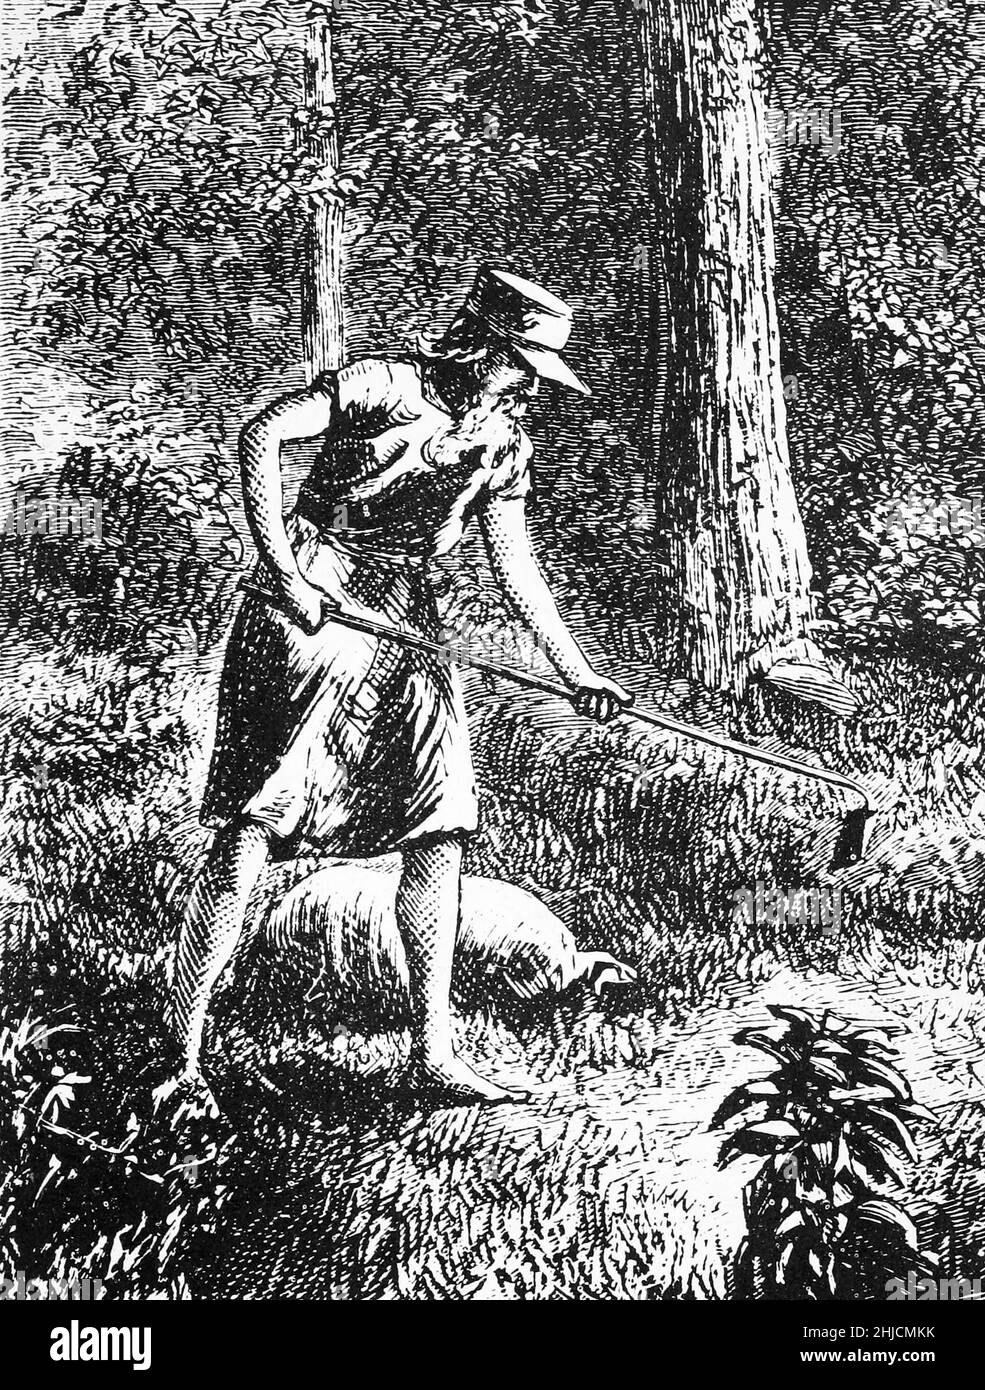 Une gravure de Johnny Appleseed, du New Monthly Magazine de Harper, 1871.John Chapman (1774-1845), plus connu sous le nom de Johnny Appleseed, était un pionnier américain, nurseryman, qui a introduit des pommiers dans de grandes parties de la Pennsylvanie, de l'Ohio, de l'Indiana, de l'Illinois et de l'Ontario, ainsi que dans les comtés du nord de la Virginie occidentale actuelle.Il est devenu une légende américaine avec ses activités de plantation d'arbres. Banque D'Images